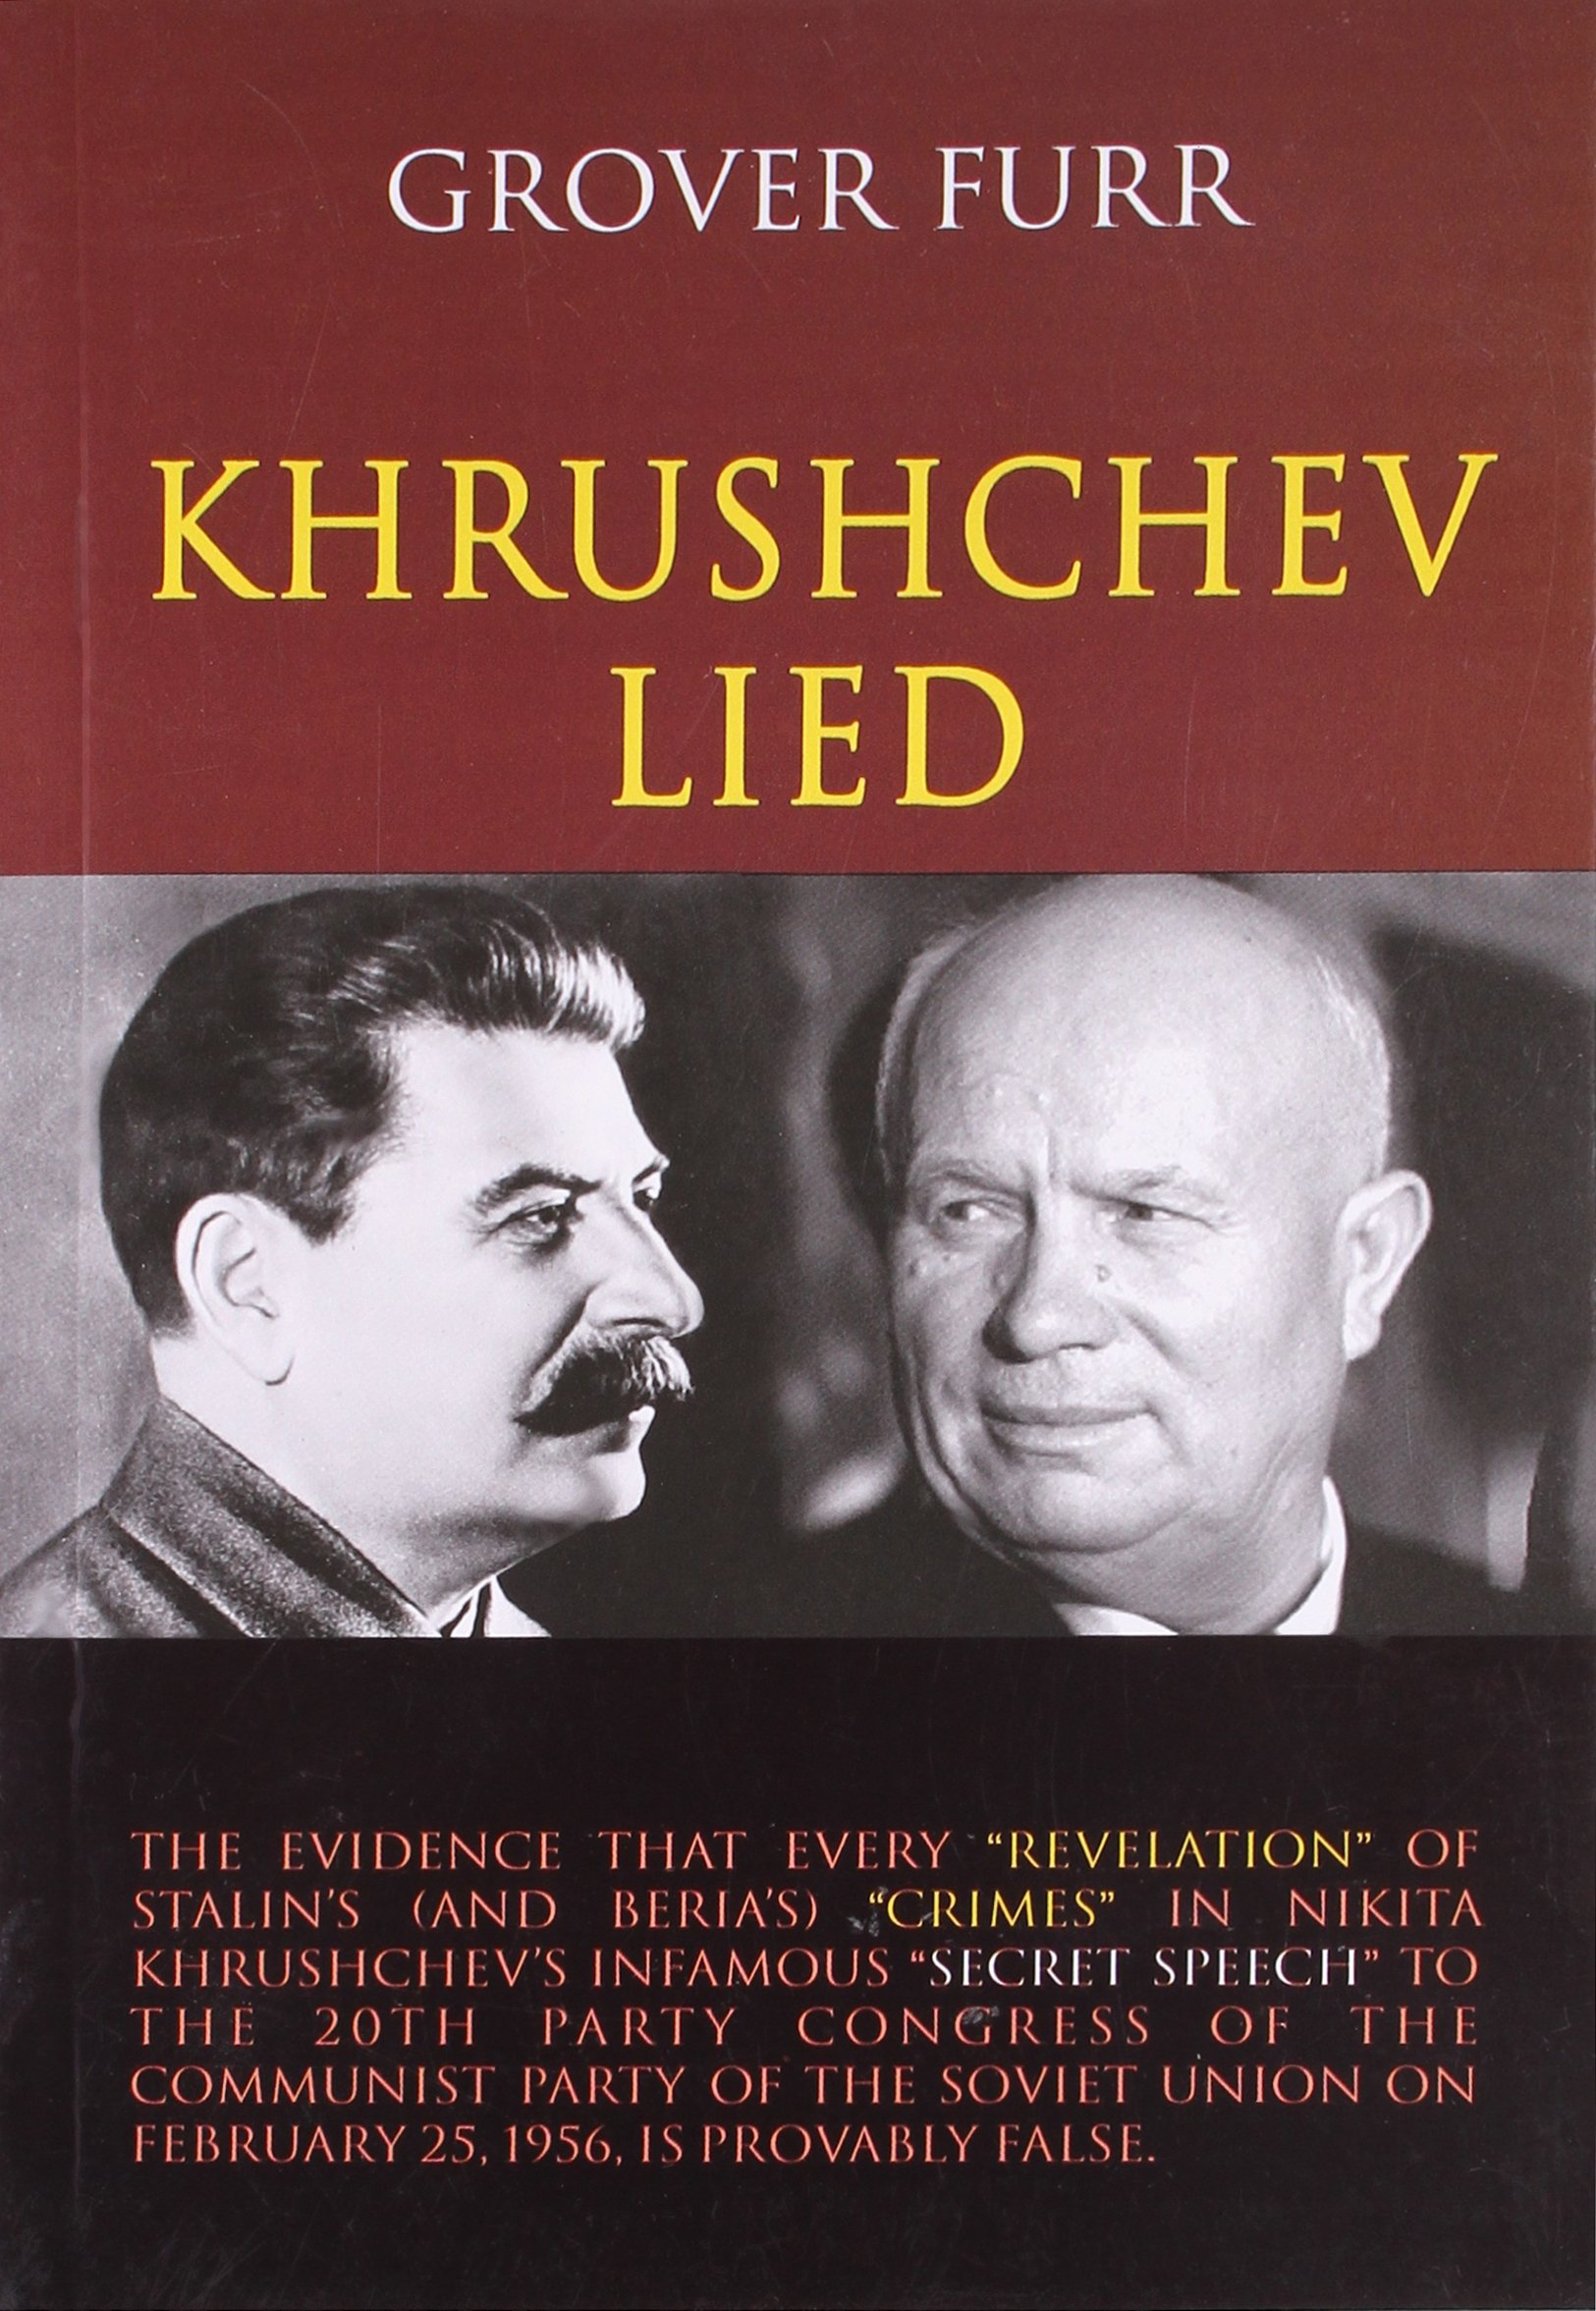 Khrushchev Lied: Amazon.co.uk: Furr Grover: 9789350022504: Books